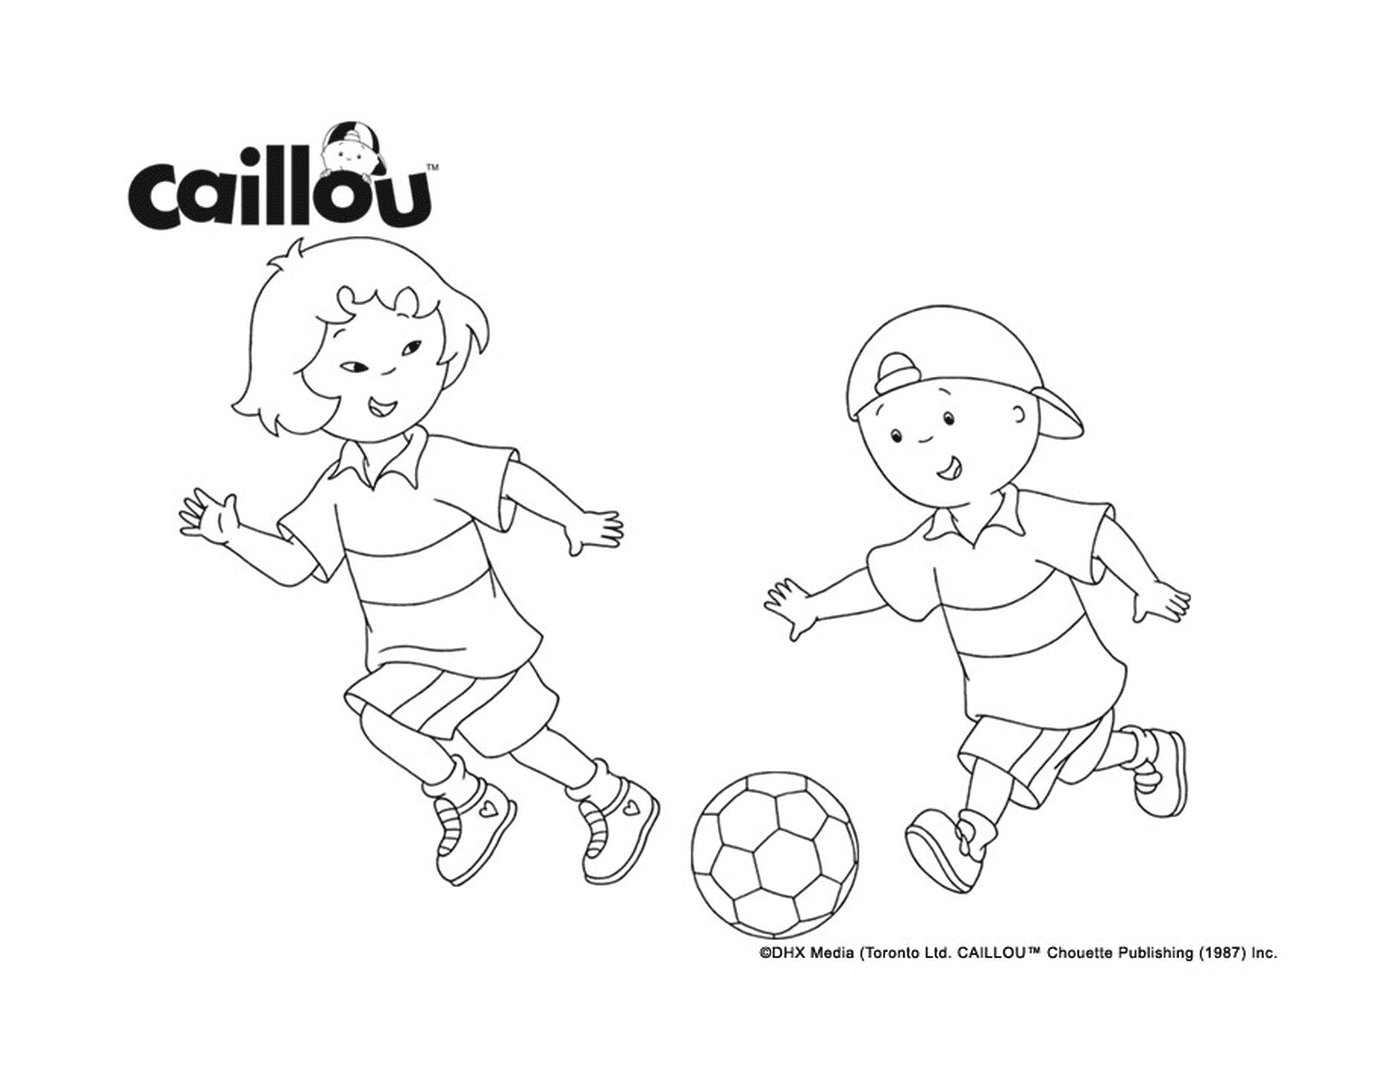  काइलू और सारा फुटबॉल खेलते हैं, ताकि वे अपने विश्‍व कप की तैयारी कर सकें 